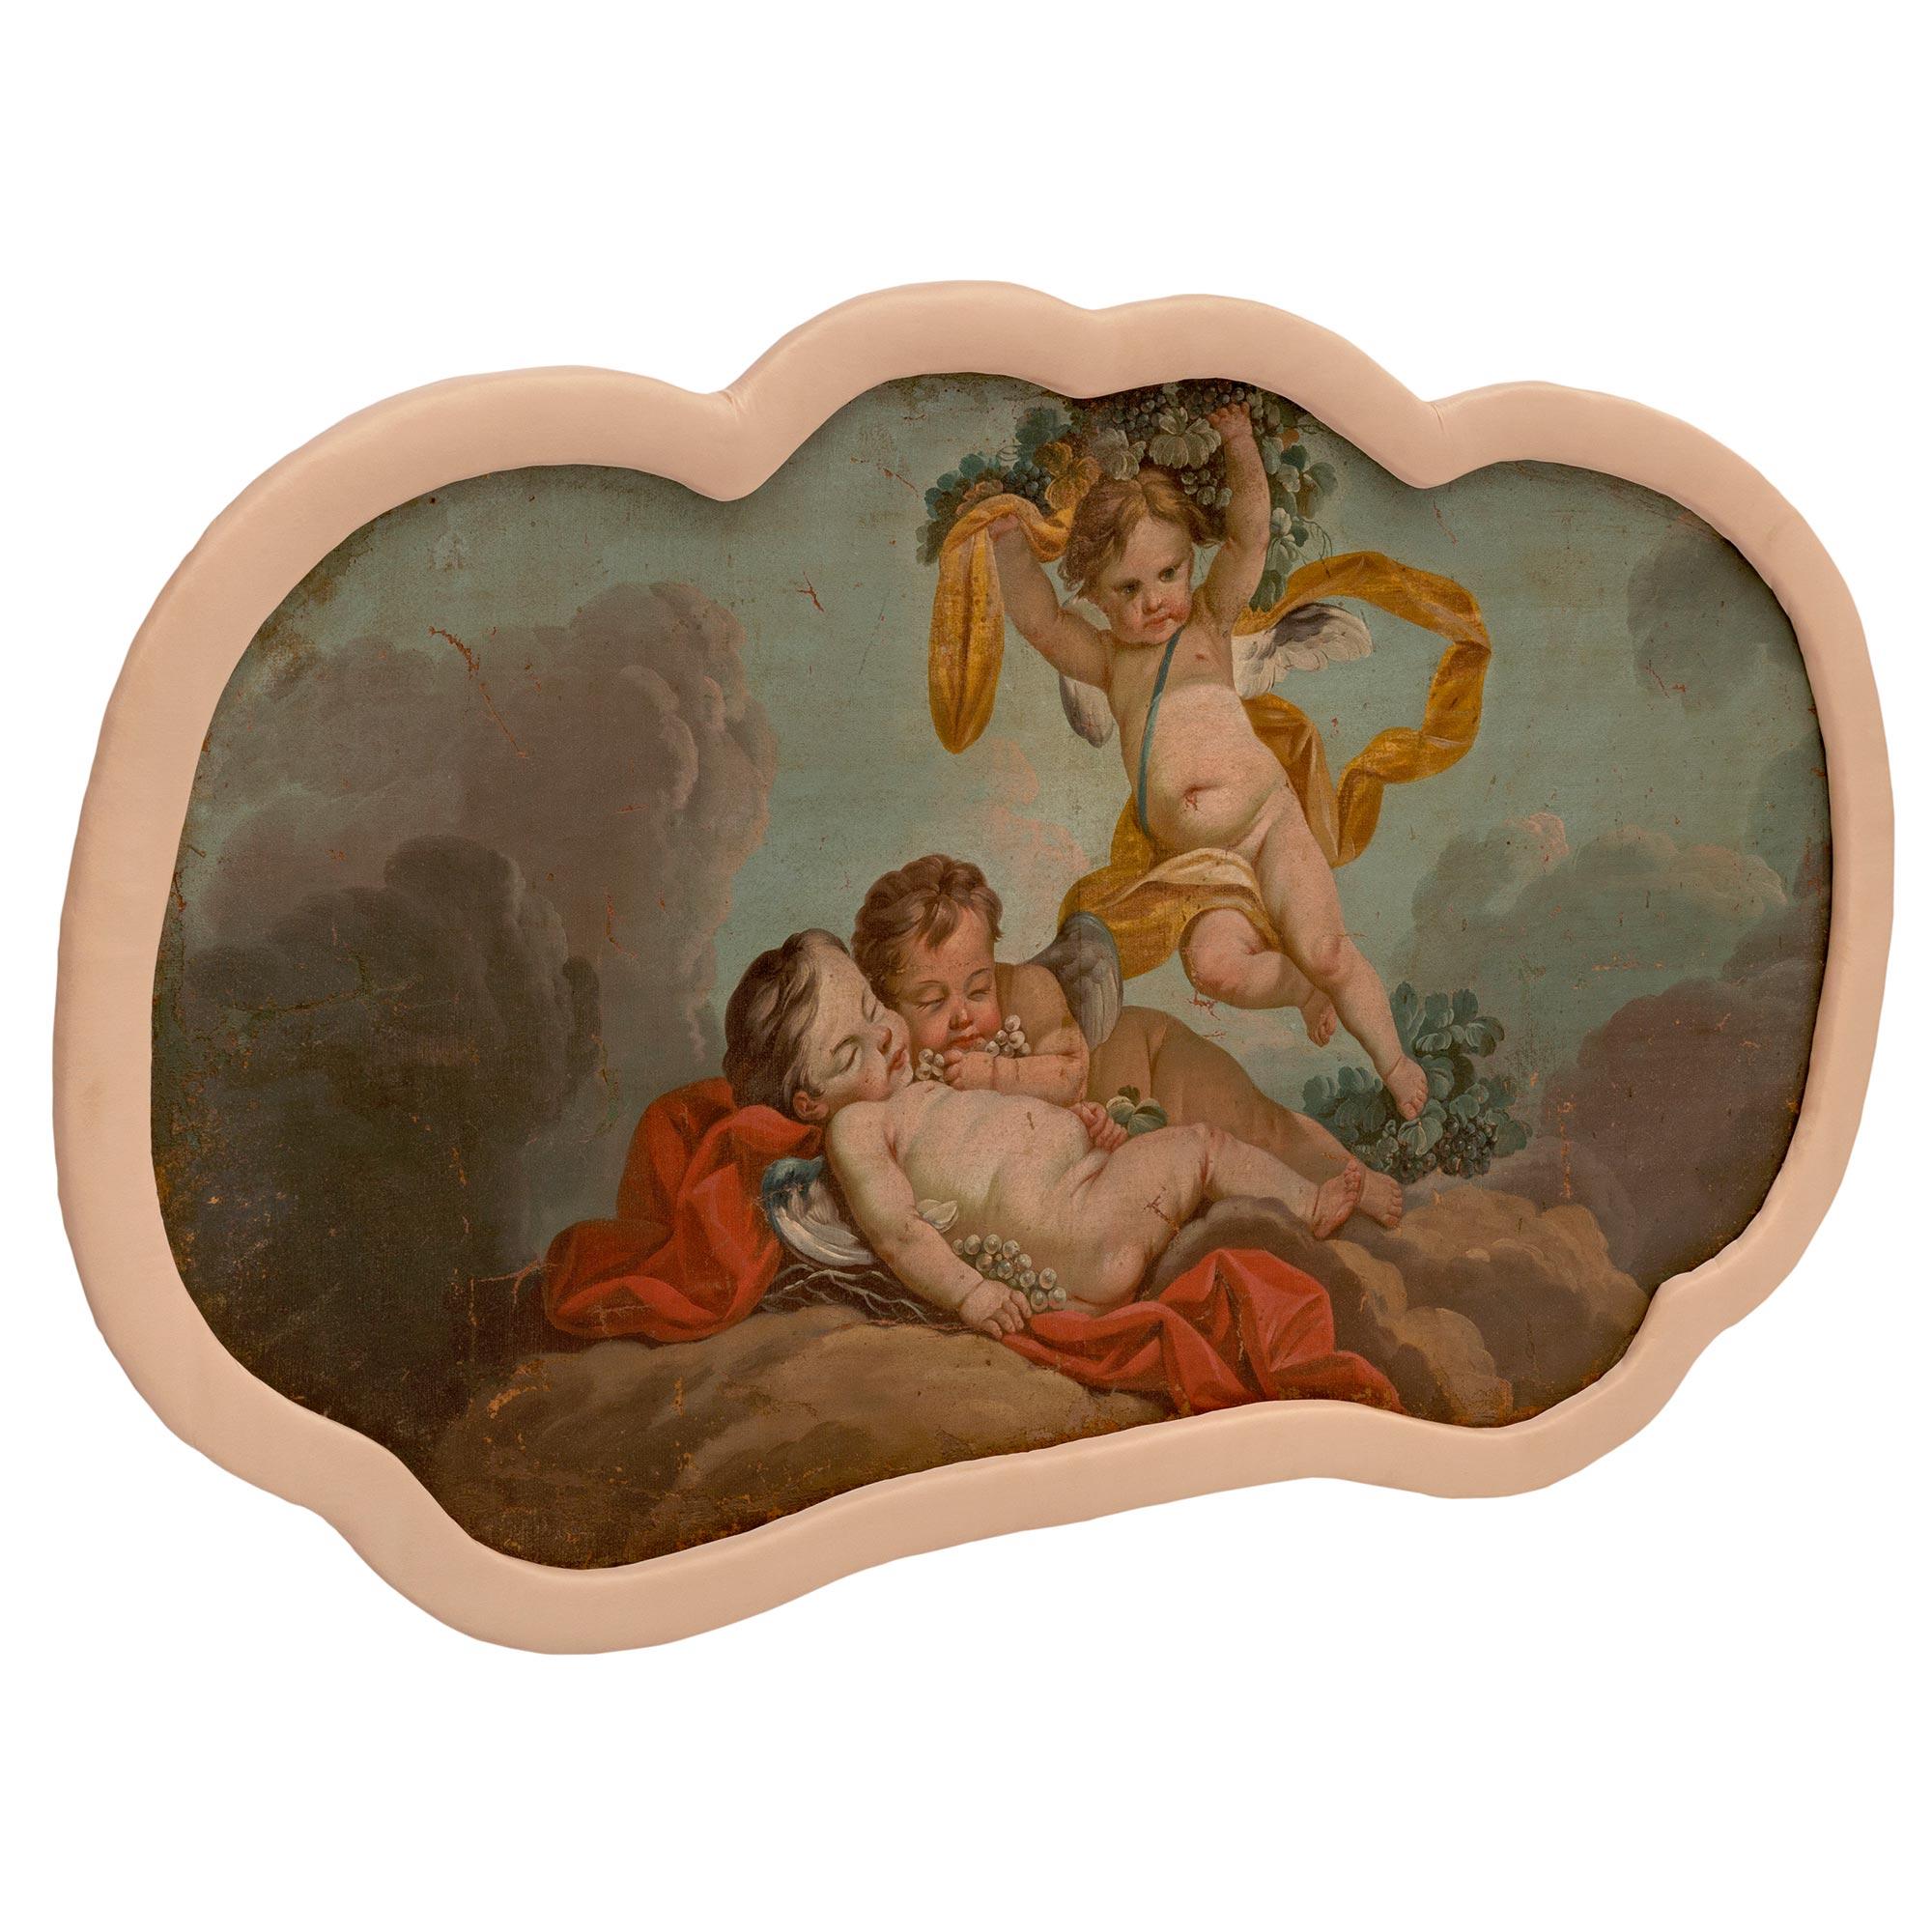 Une belle et très charmante paire de peintures à l'huile sur toile du 18ème siècle. Chaque tableau en forme de nuage, très décoratif et coloré, présente un joli motif festonné avec une fine bordure en tissu. Les deux scènes merveilleusement